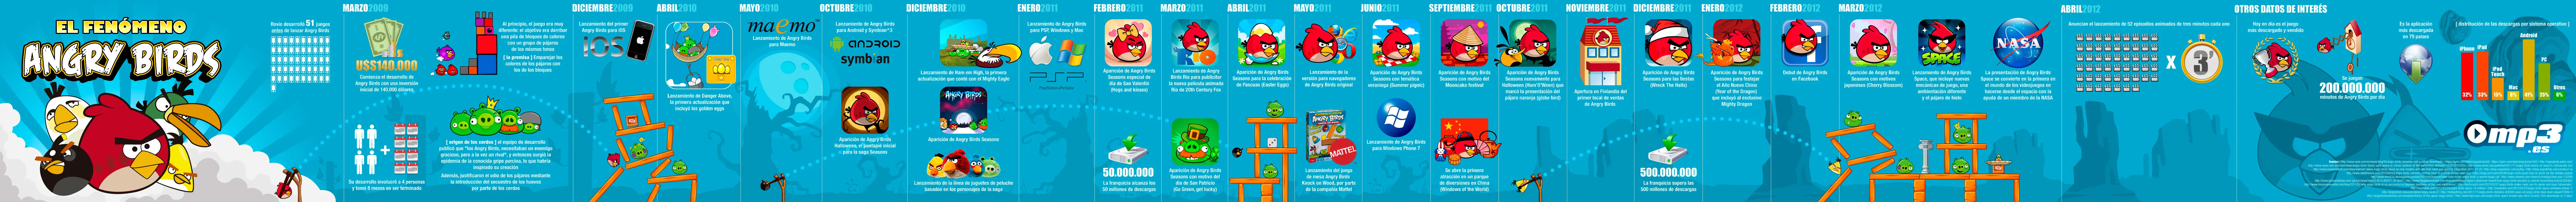 Angry Birds: El fenomeno [Infografía]